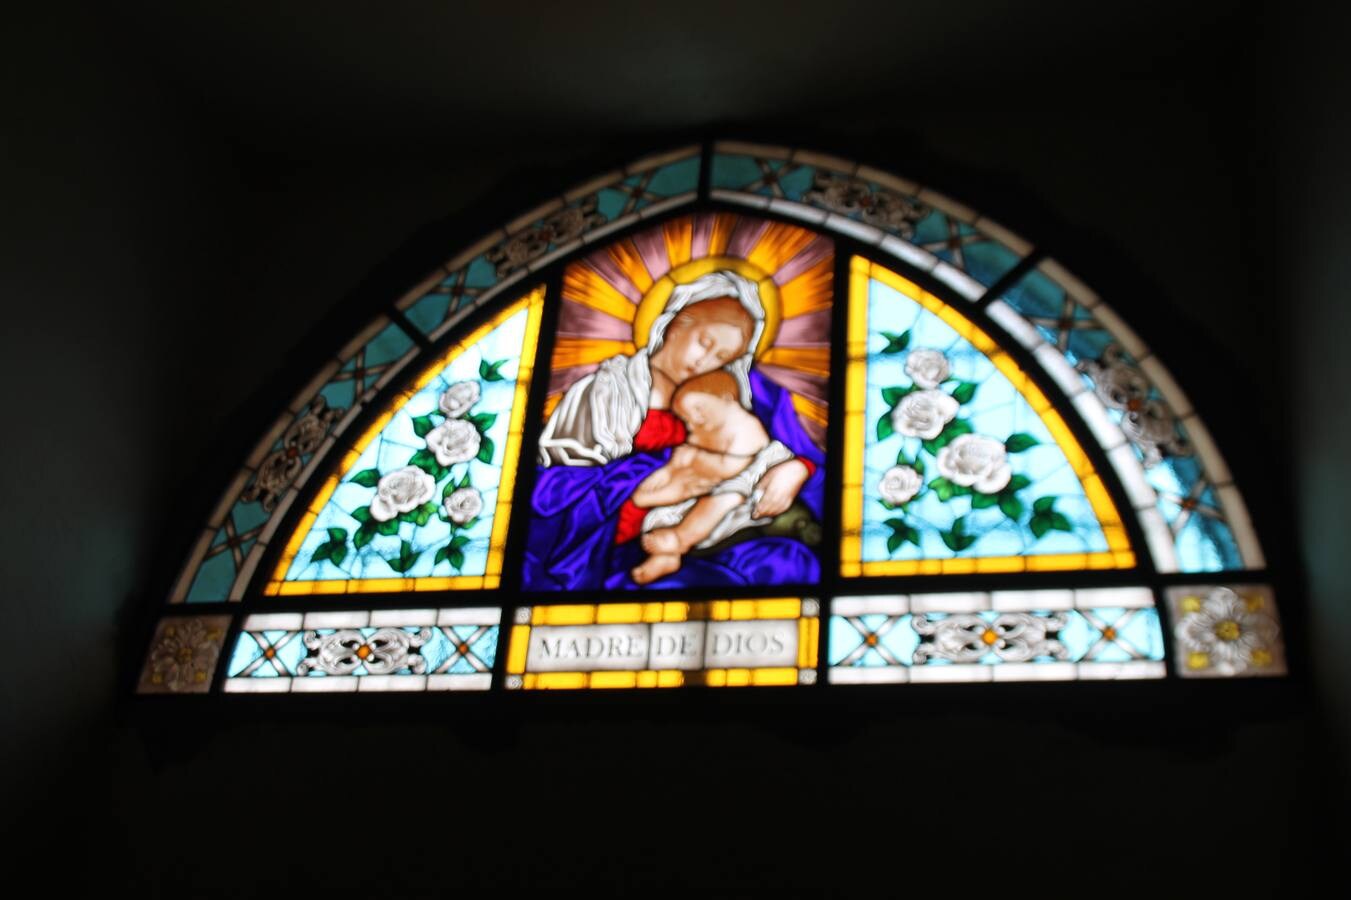 Vidriera con motivo iconoclasta de la Virgen Madre de Dios, colocada en la ventana en forma de arco que comunica con la Corredera Hernando de Soto.